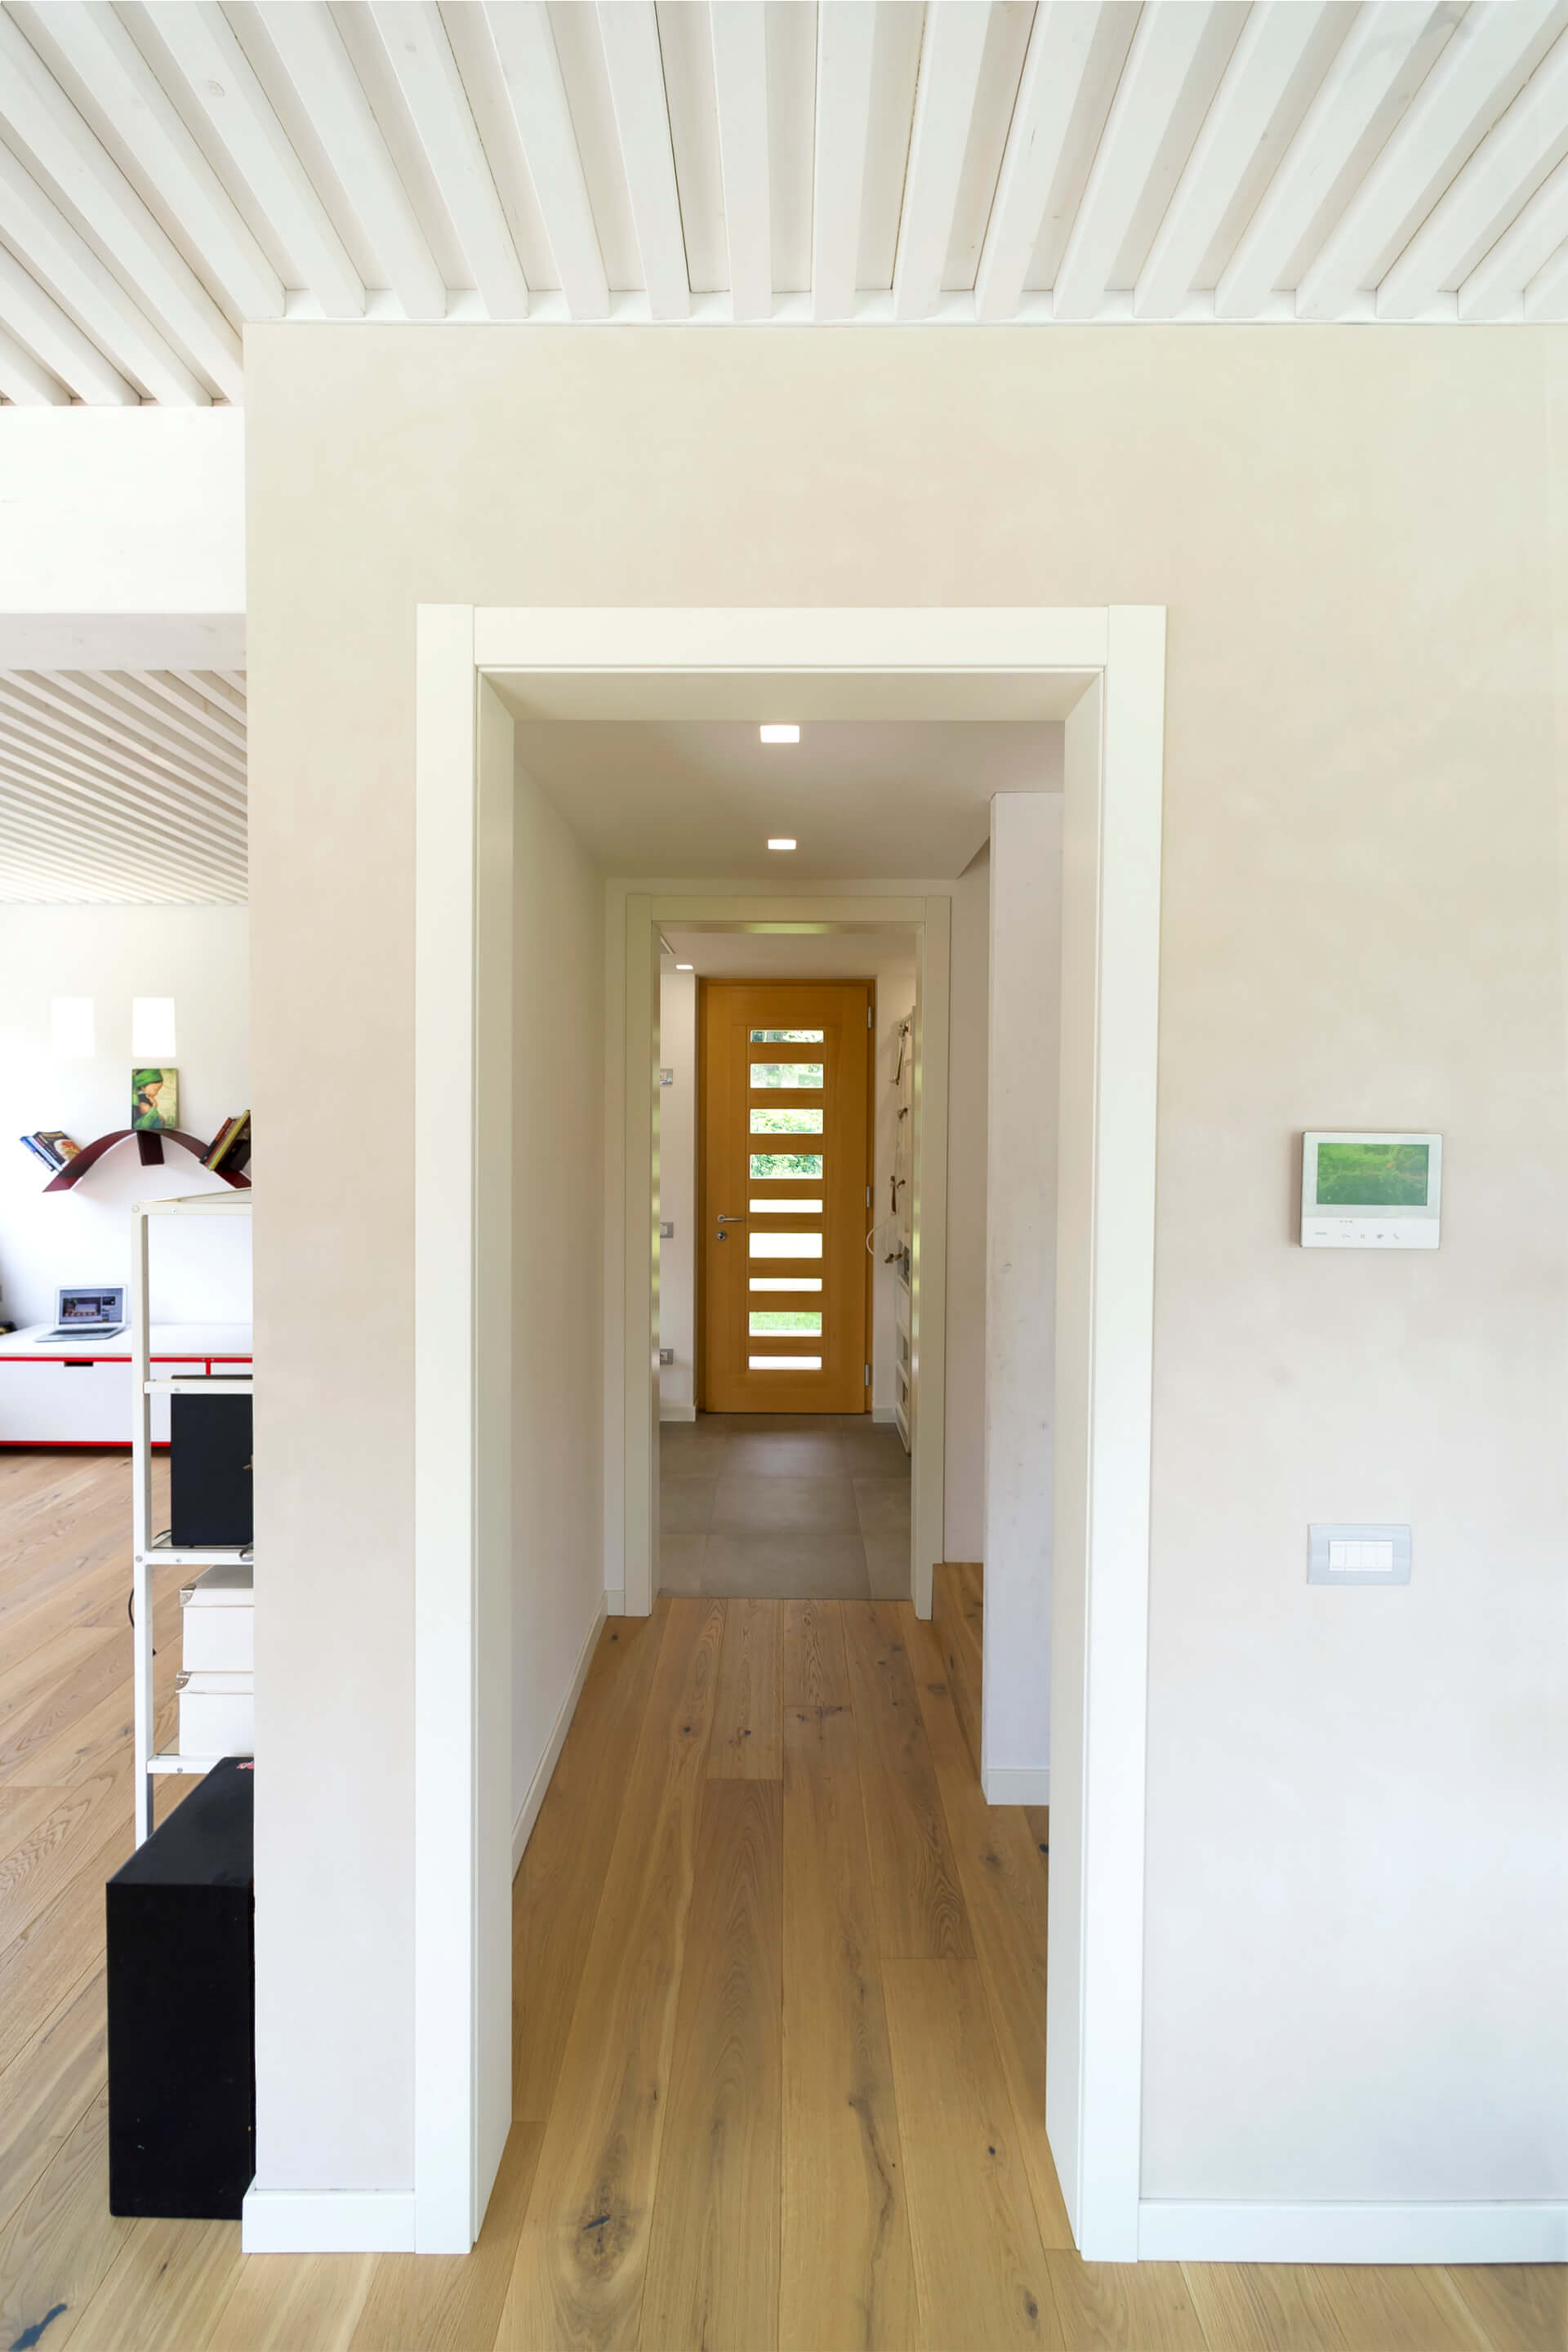 Strutture in legno per gli ambienti interni casa passiva